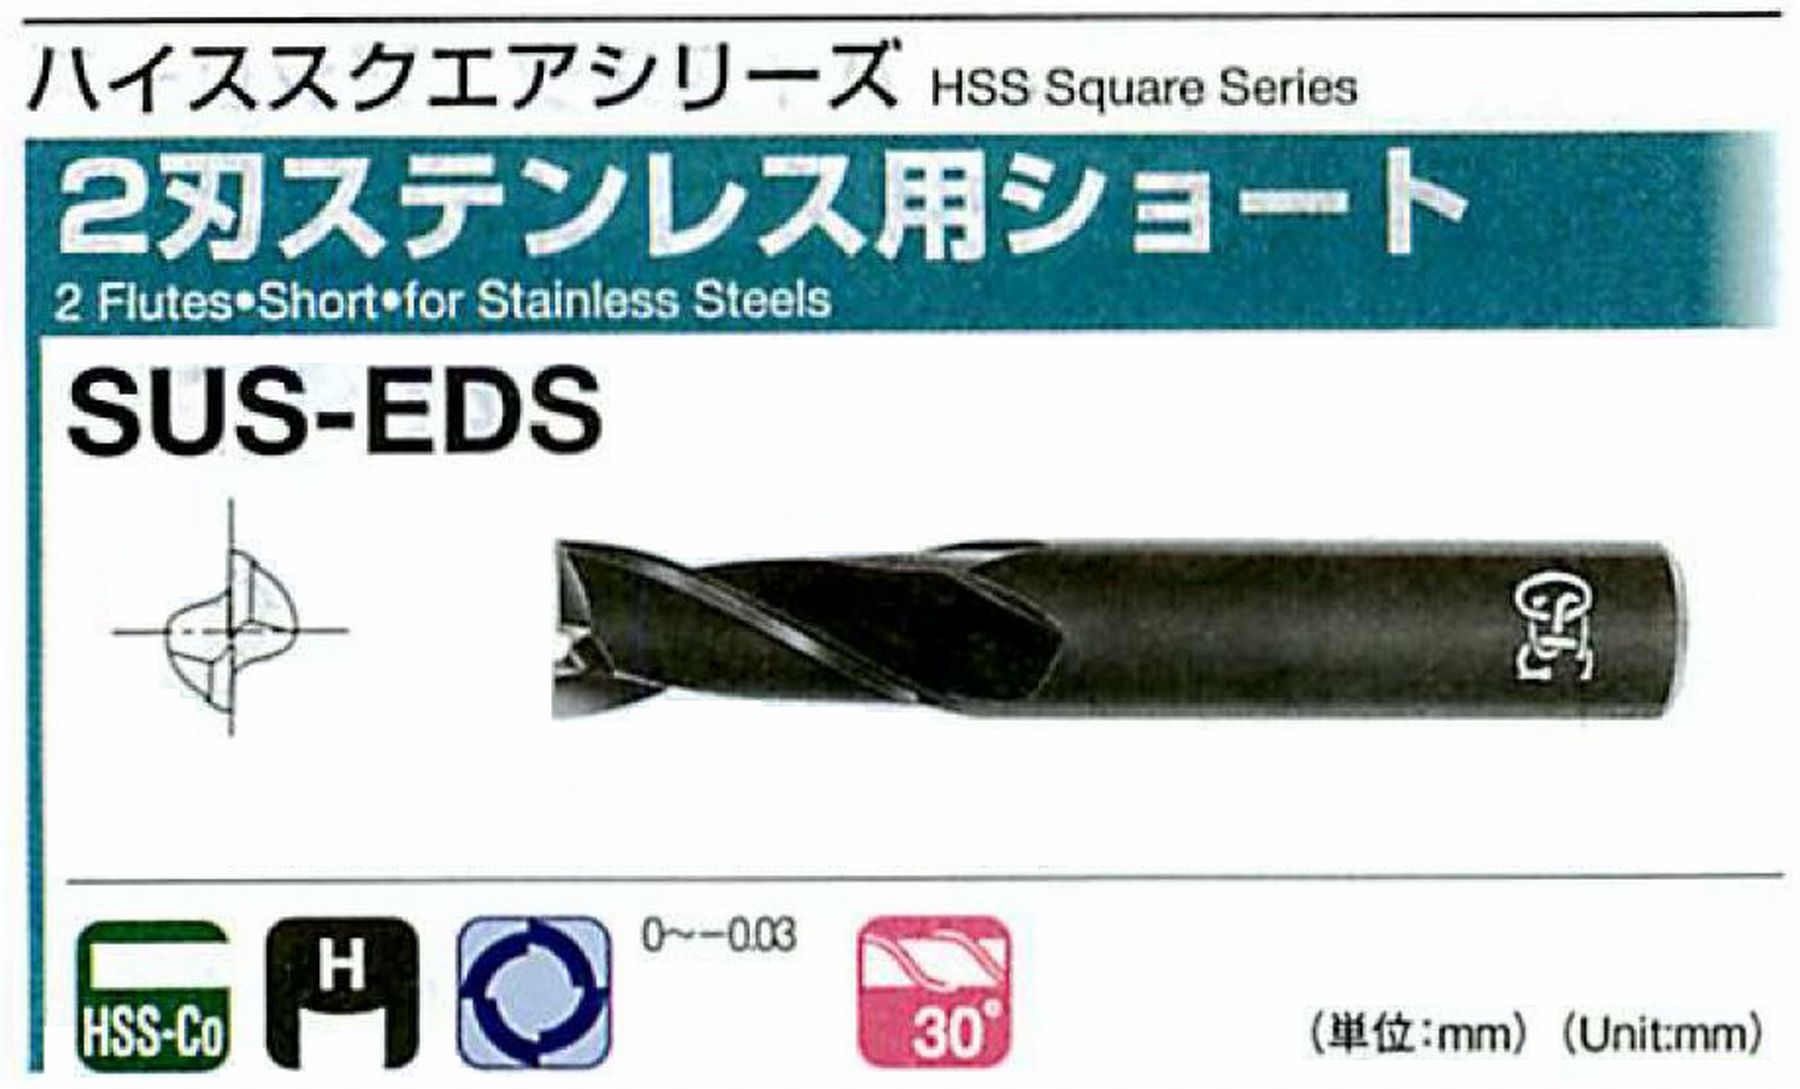 オーエスジー/OSG 2刃ステンレス用ショート SUS-EDS 外径16 全長95 刃長30 シャンク径16mm